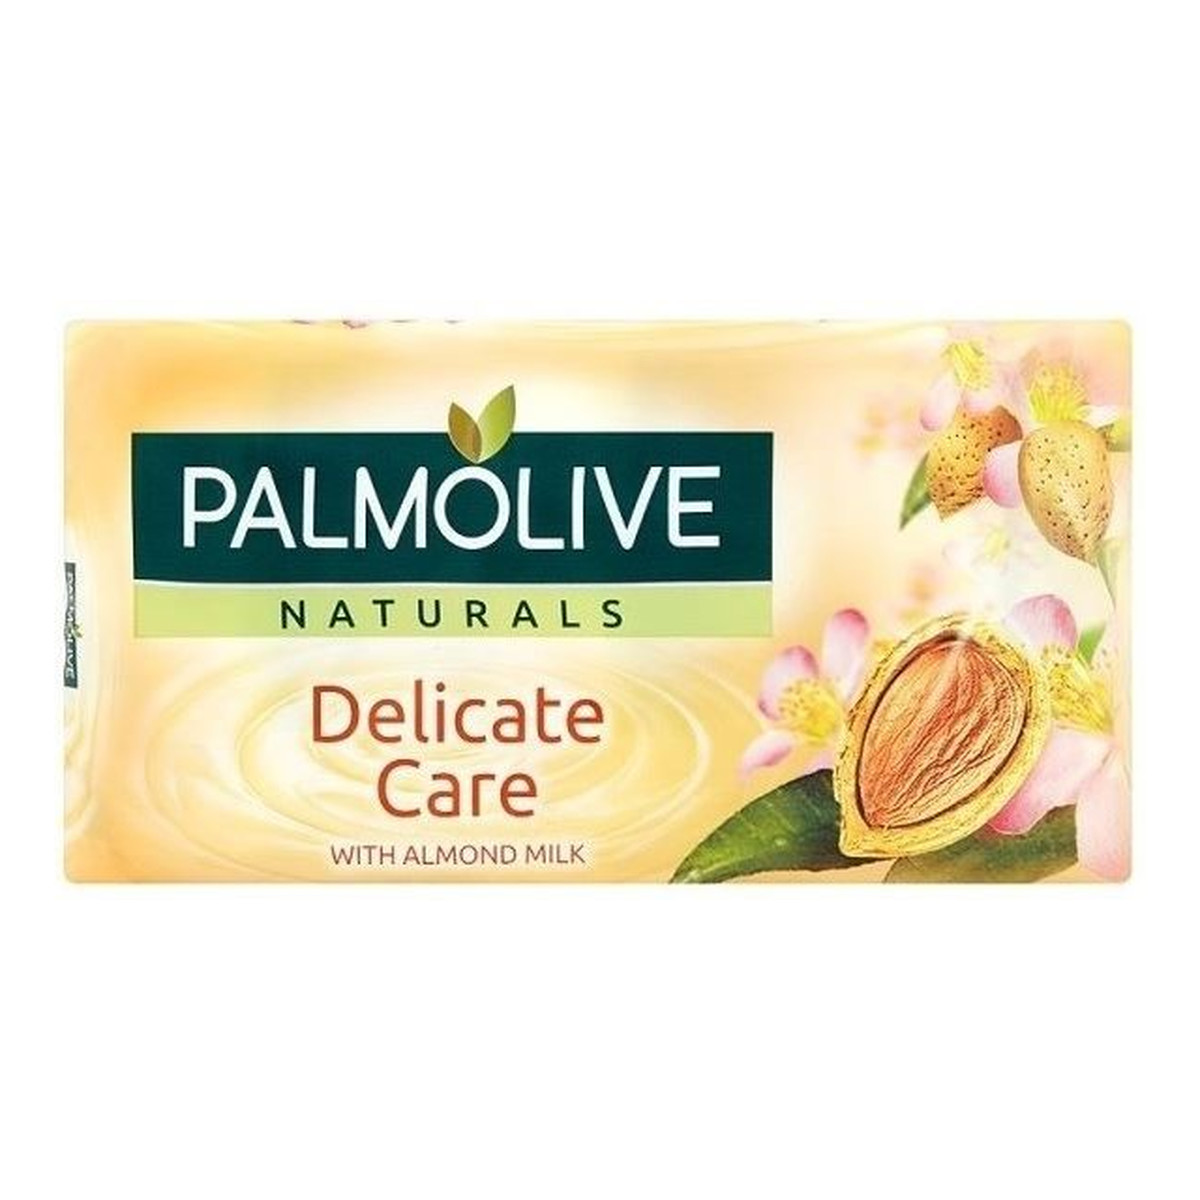 Palmolive Delicate Care Mydło w kostce Almond milk Mleko migdałowe 90g